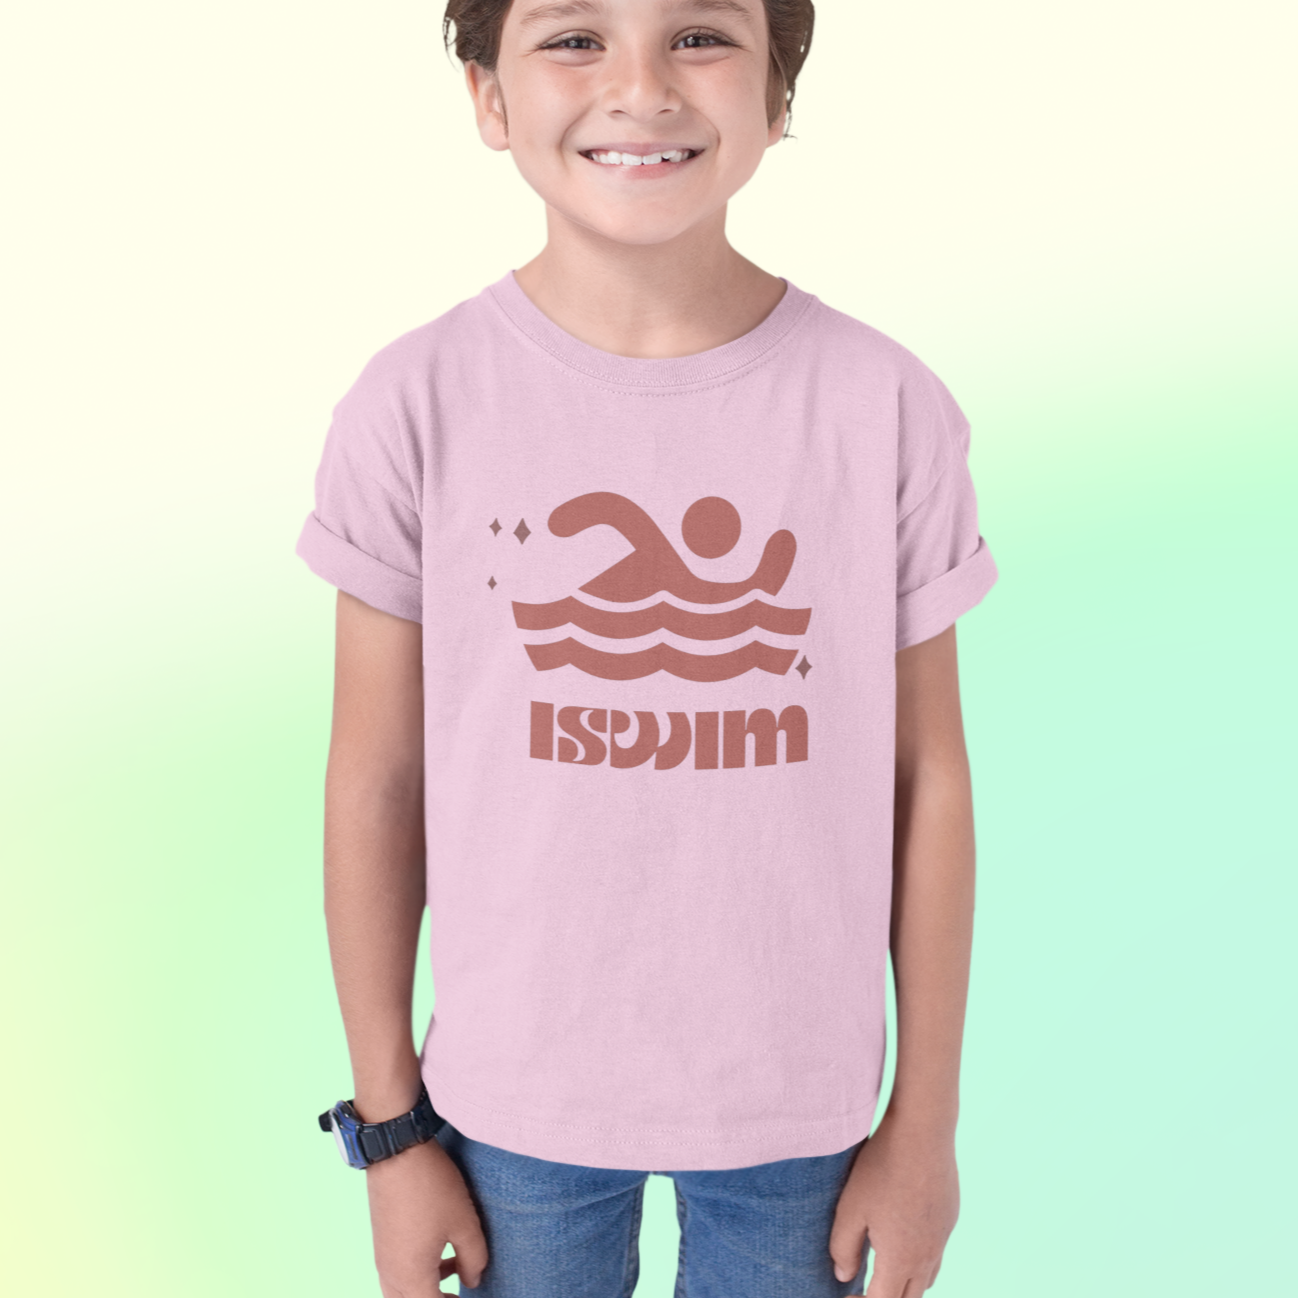 I Swim Light Pink T-shirt for Kids, Boys